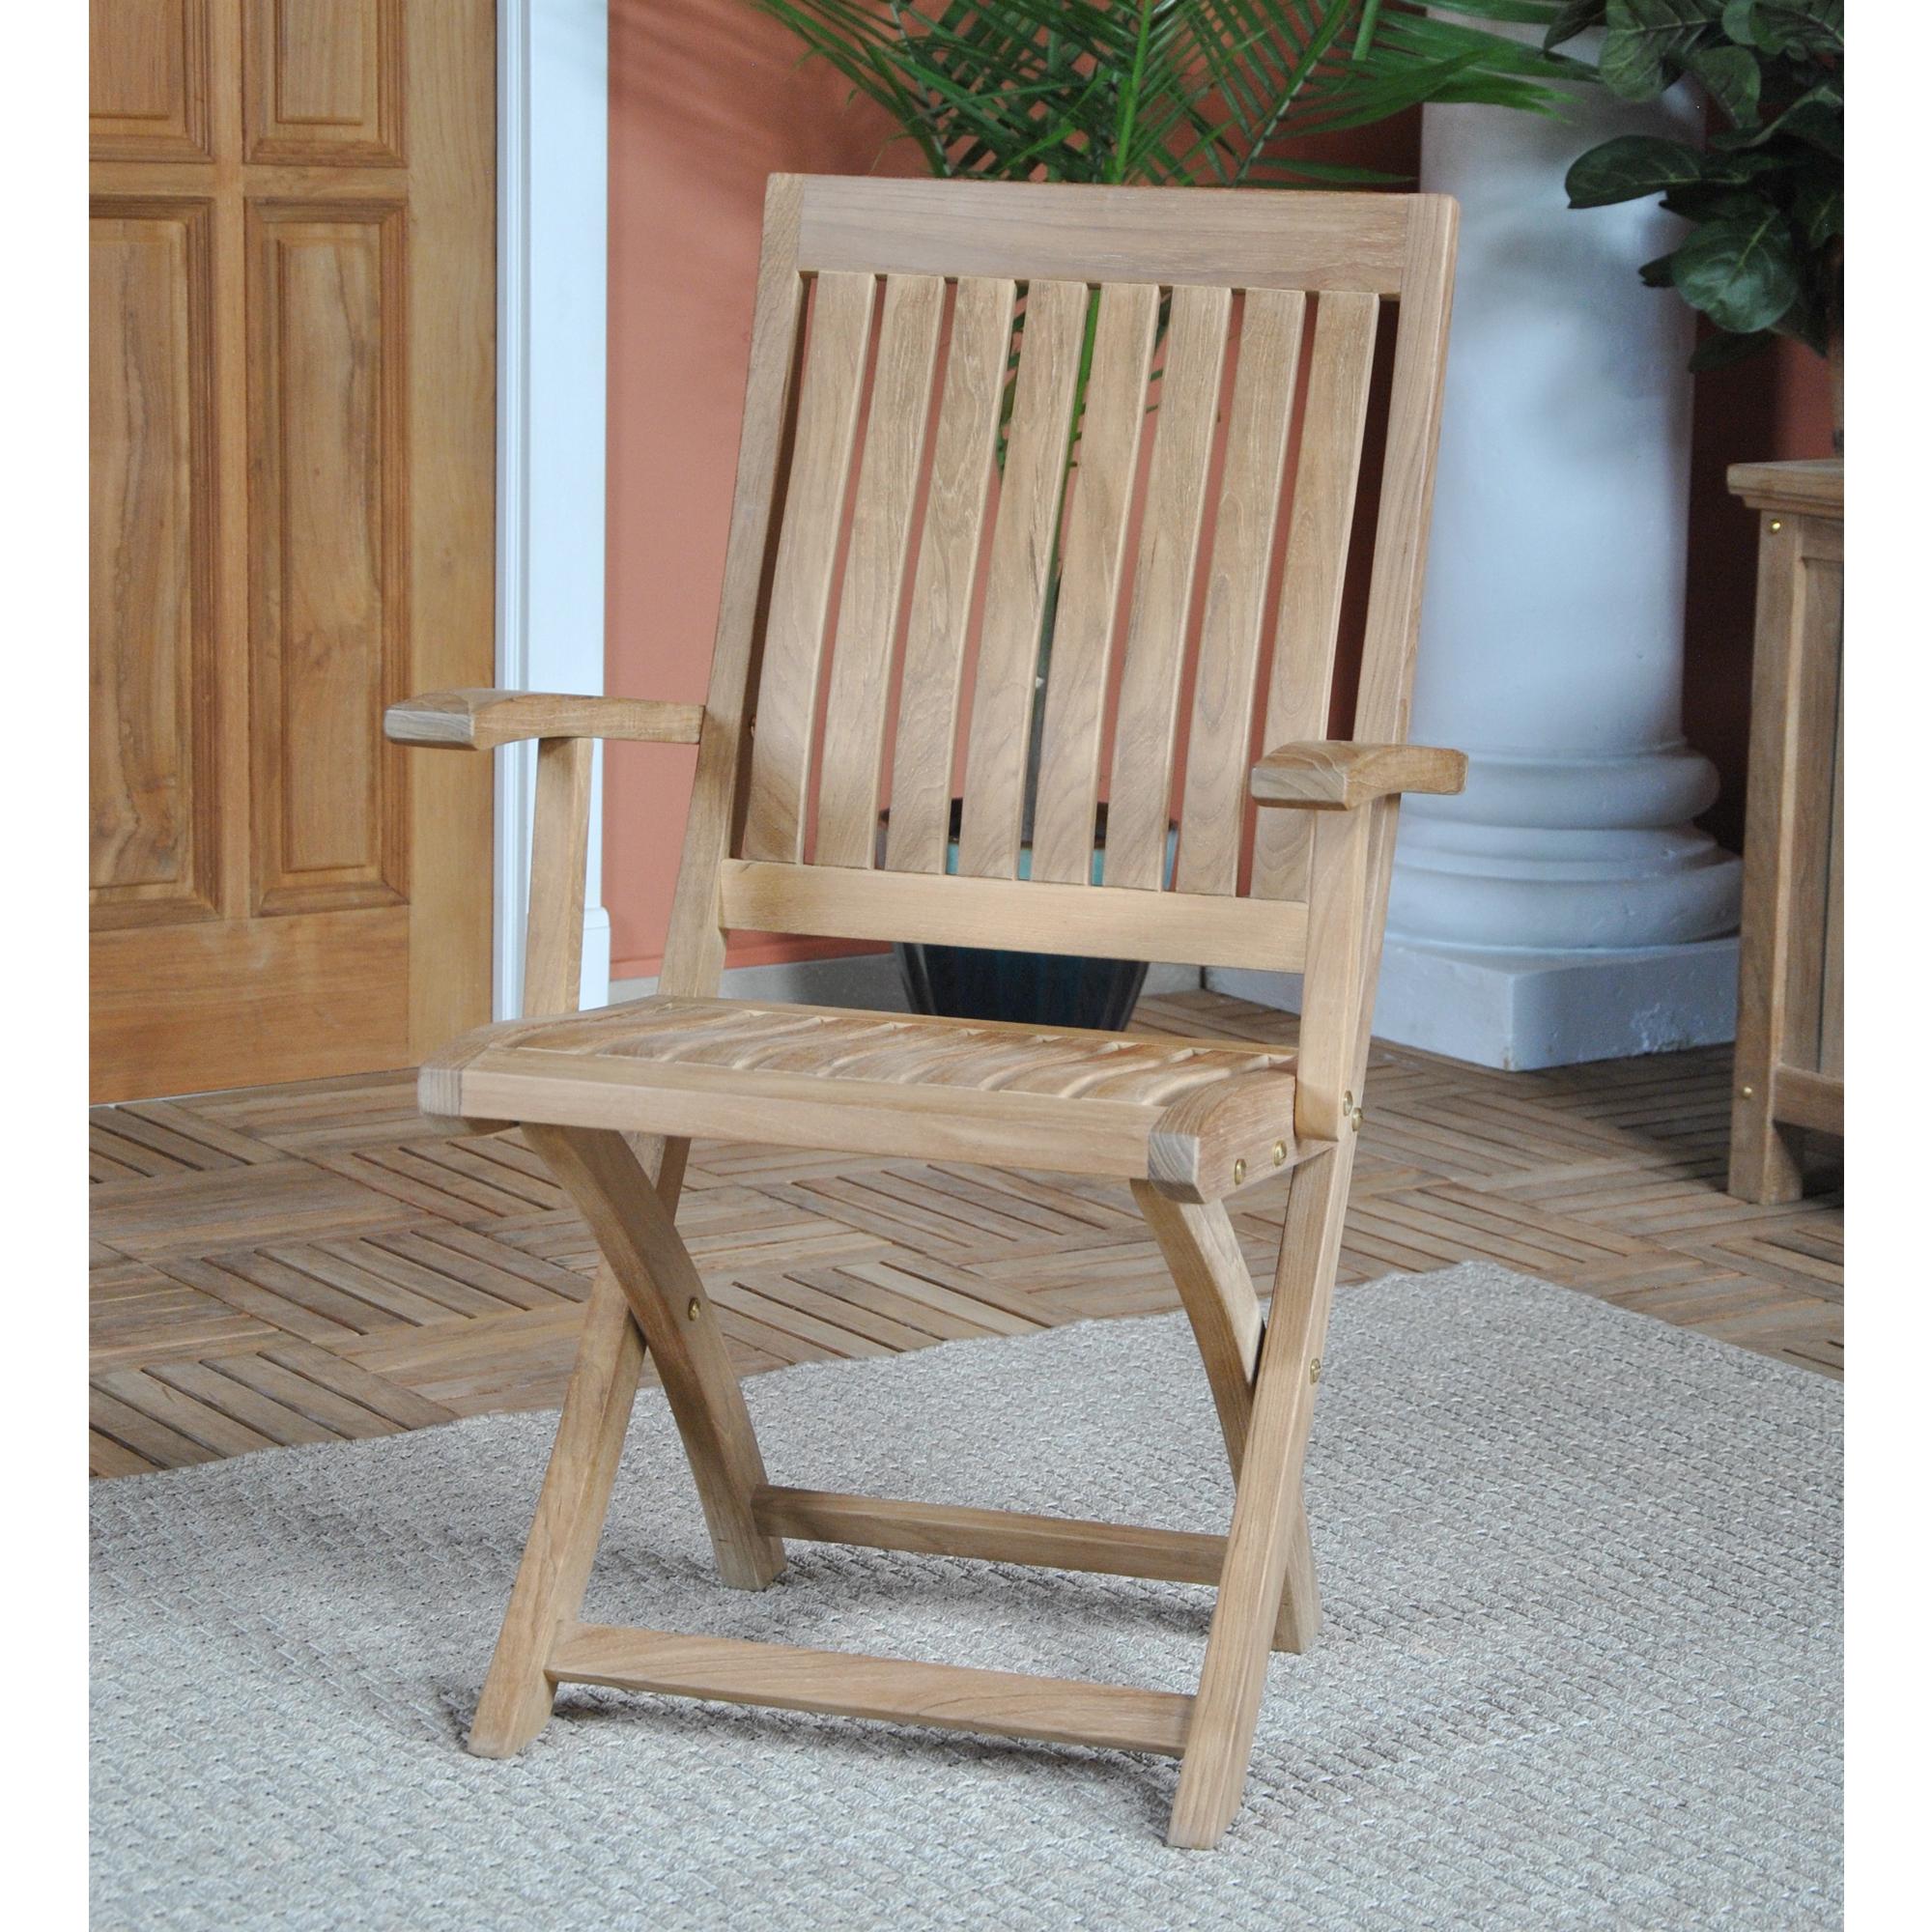 Der Niagara Teak Crown Folding Arm Chair ist sowohl für den Innen- als auch für den Außenbereich geeignet. Der aus massivem Teakholz gefertigte und sehr solide gebaute Teak-Klappsessel bietet eine bequeme Sitzgelegenheit und lässt sich bei